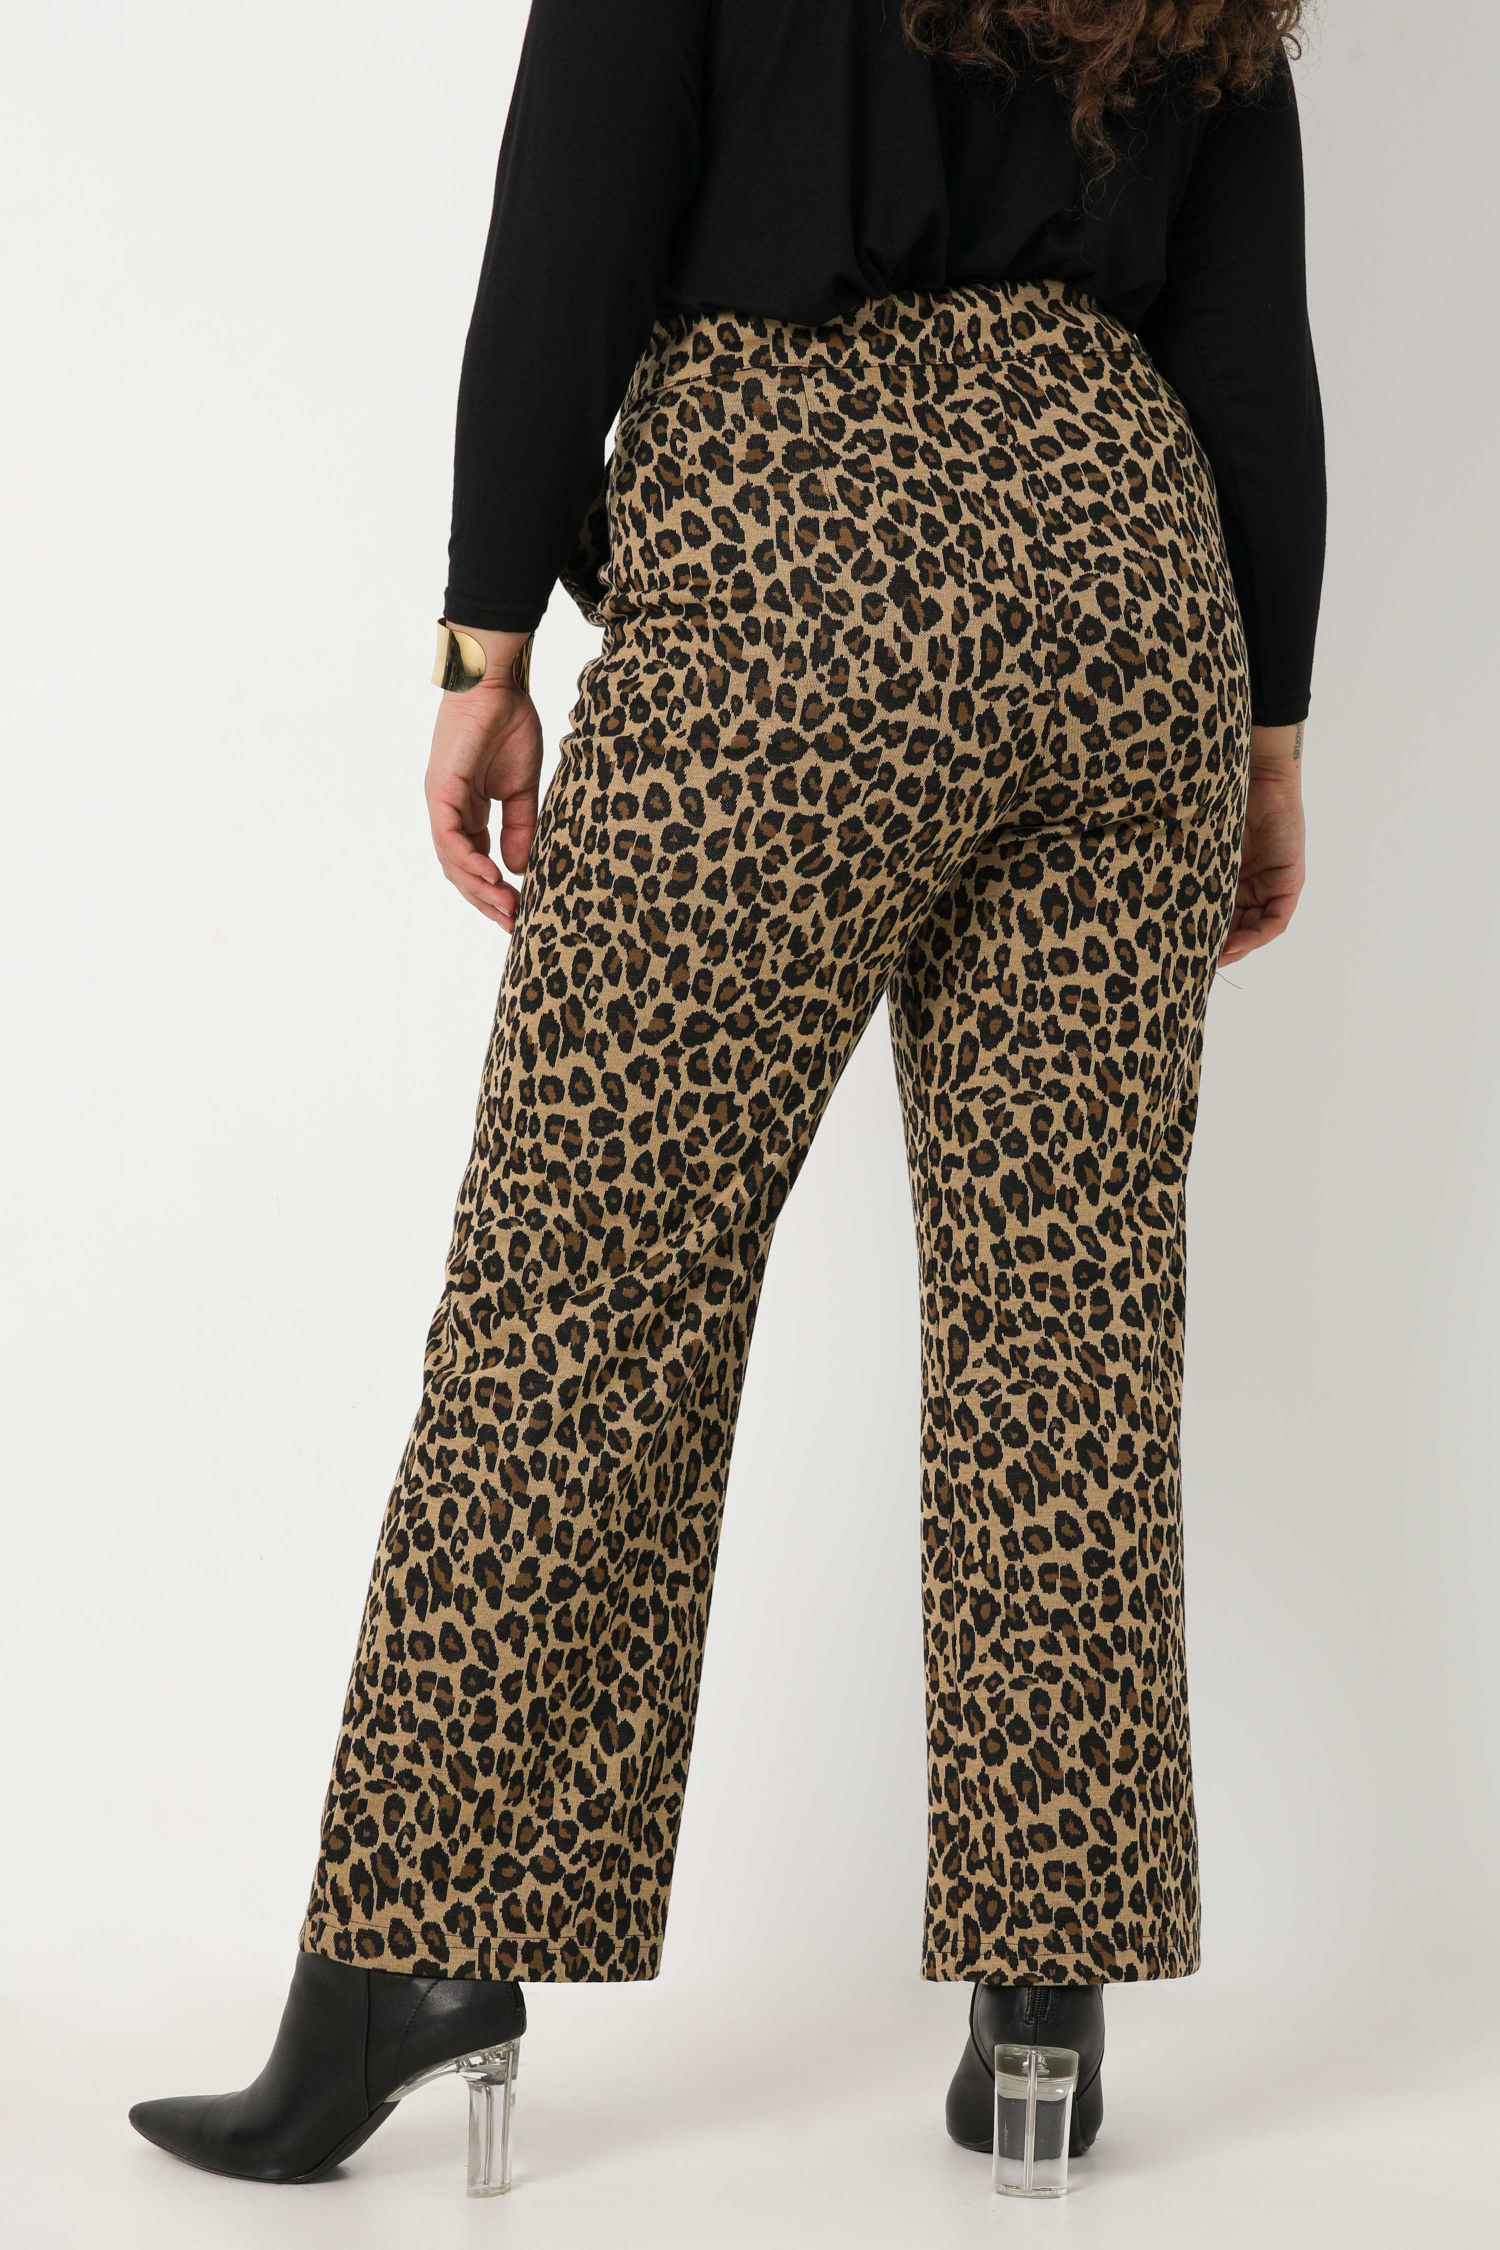 Leopard pattern pants